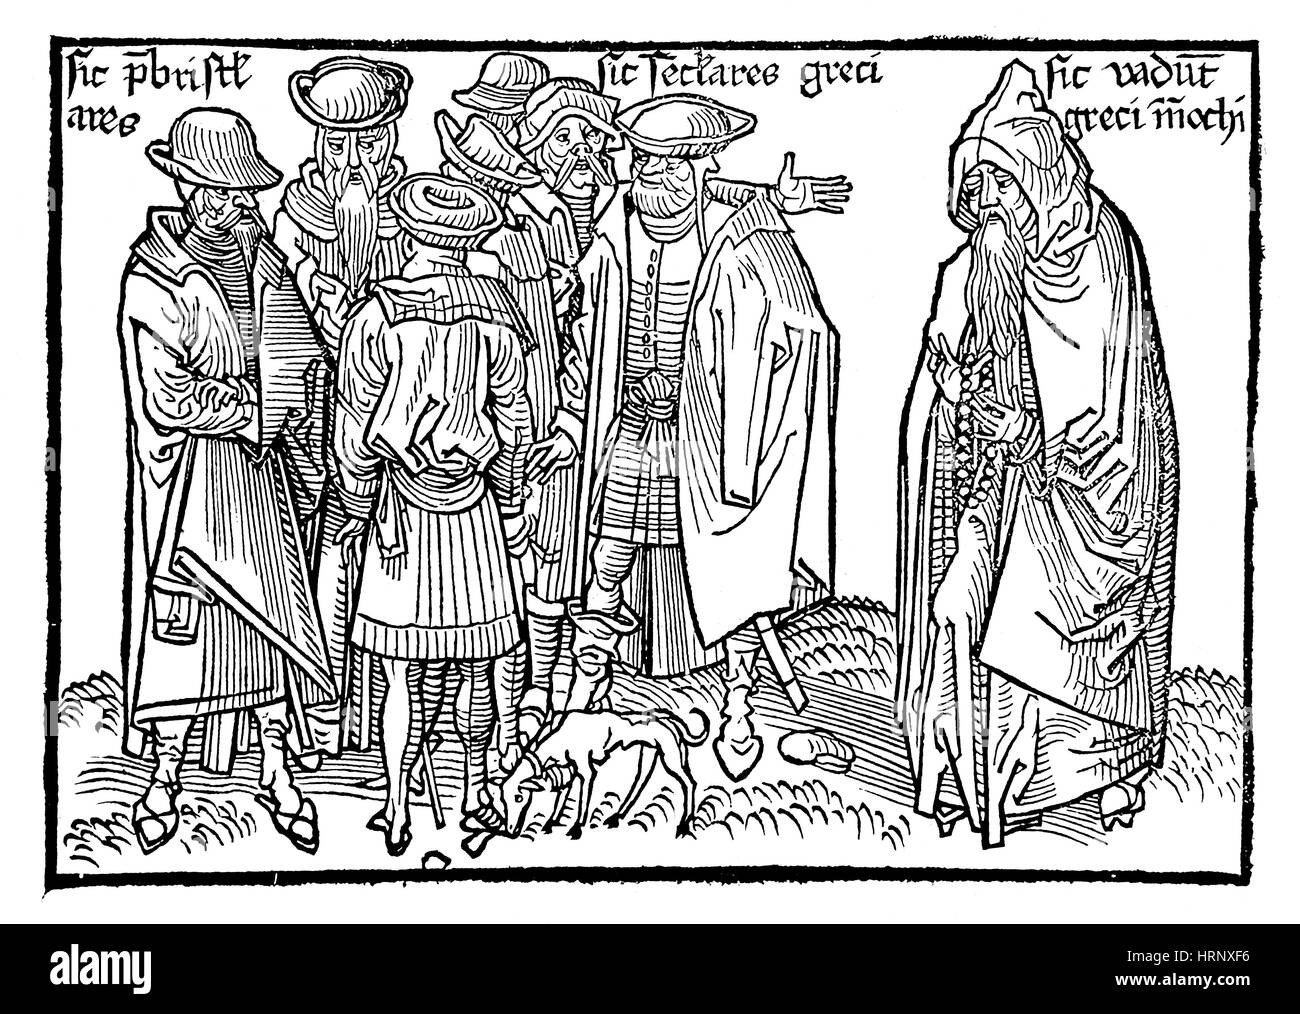 Sanctae Pereginationes, Chrétiens grecs, 1486 Banque D'Images